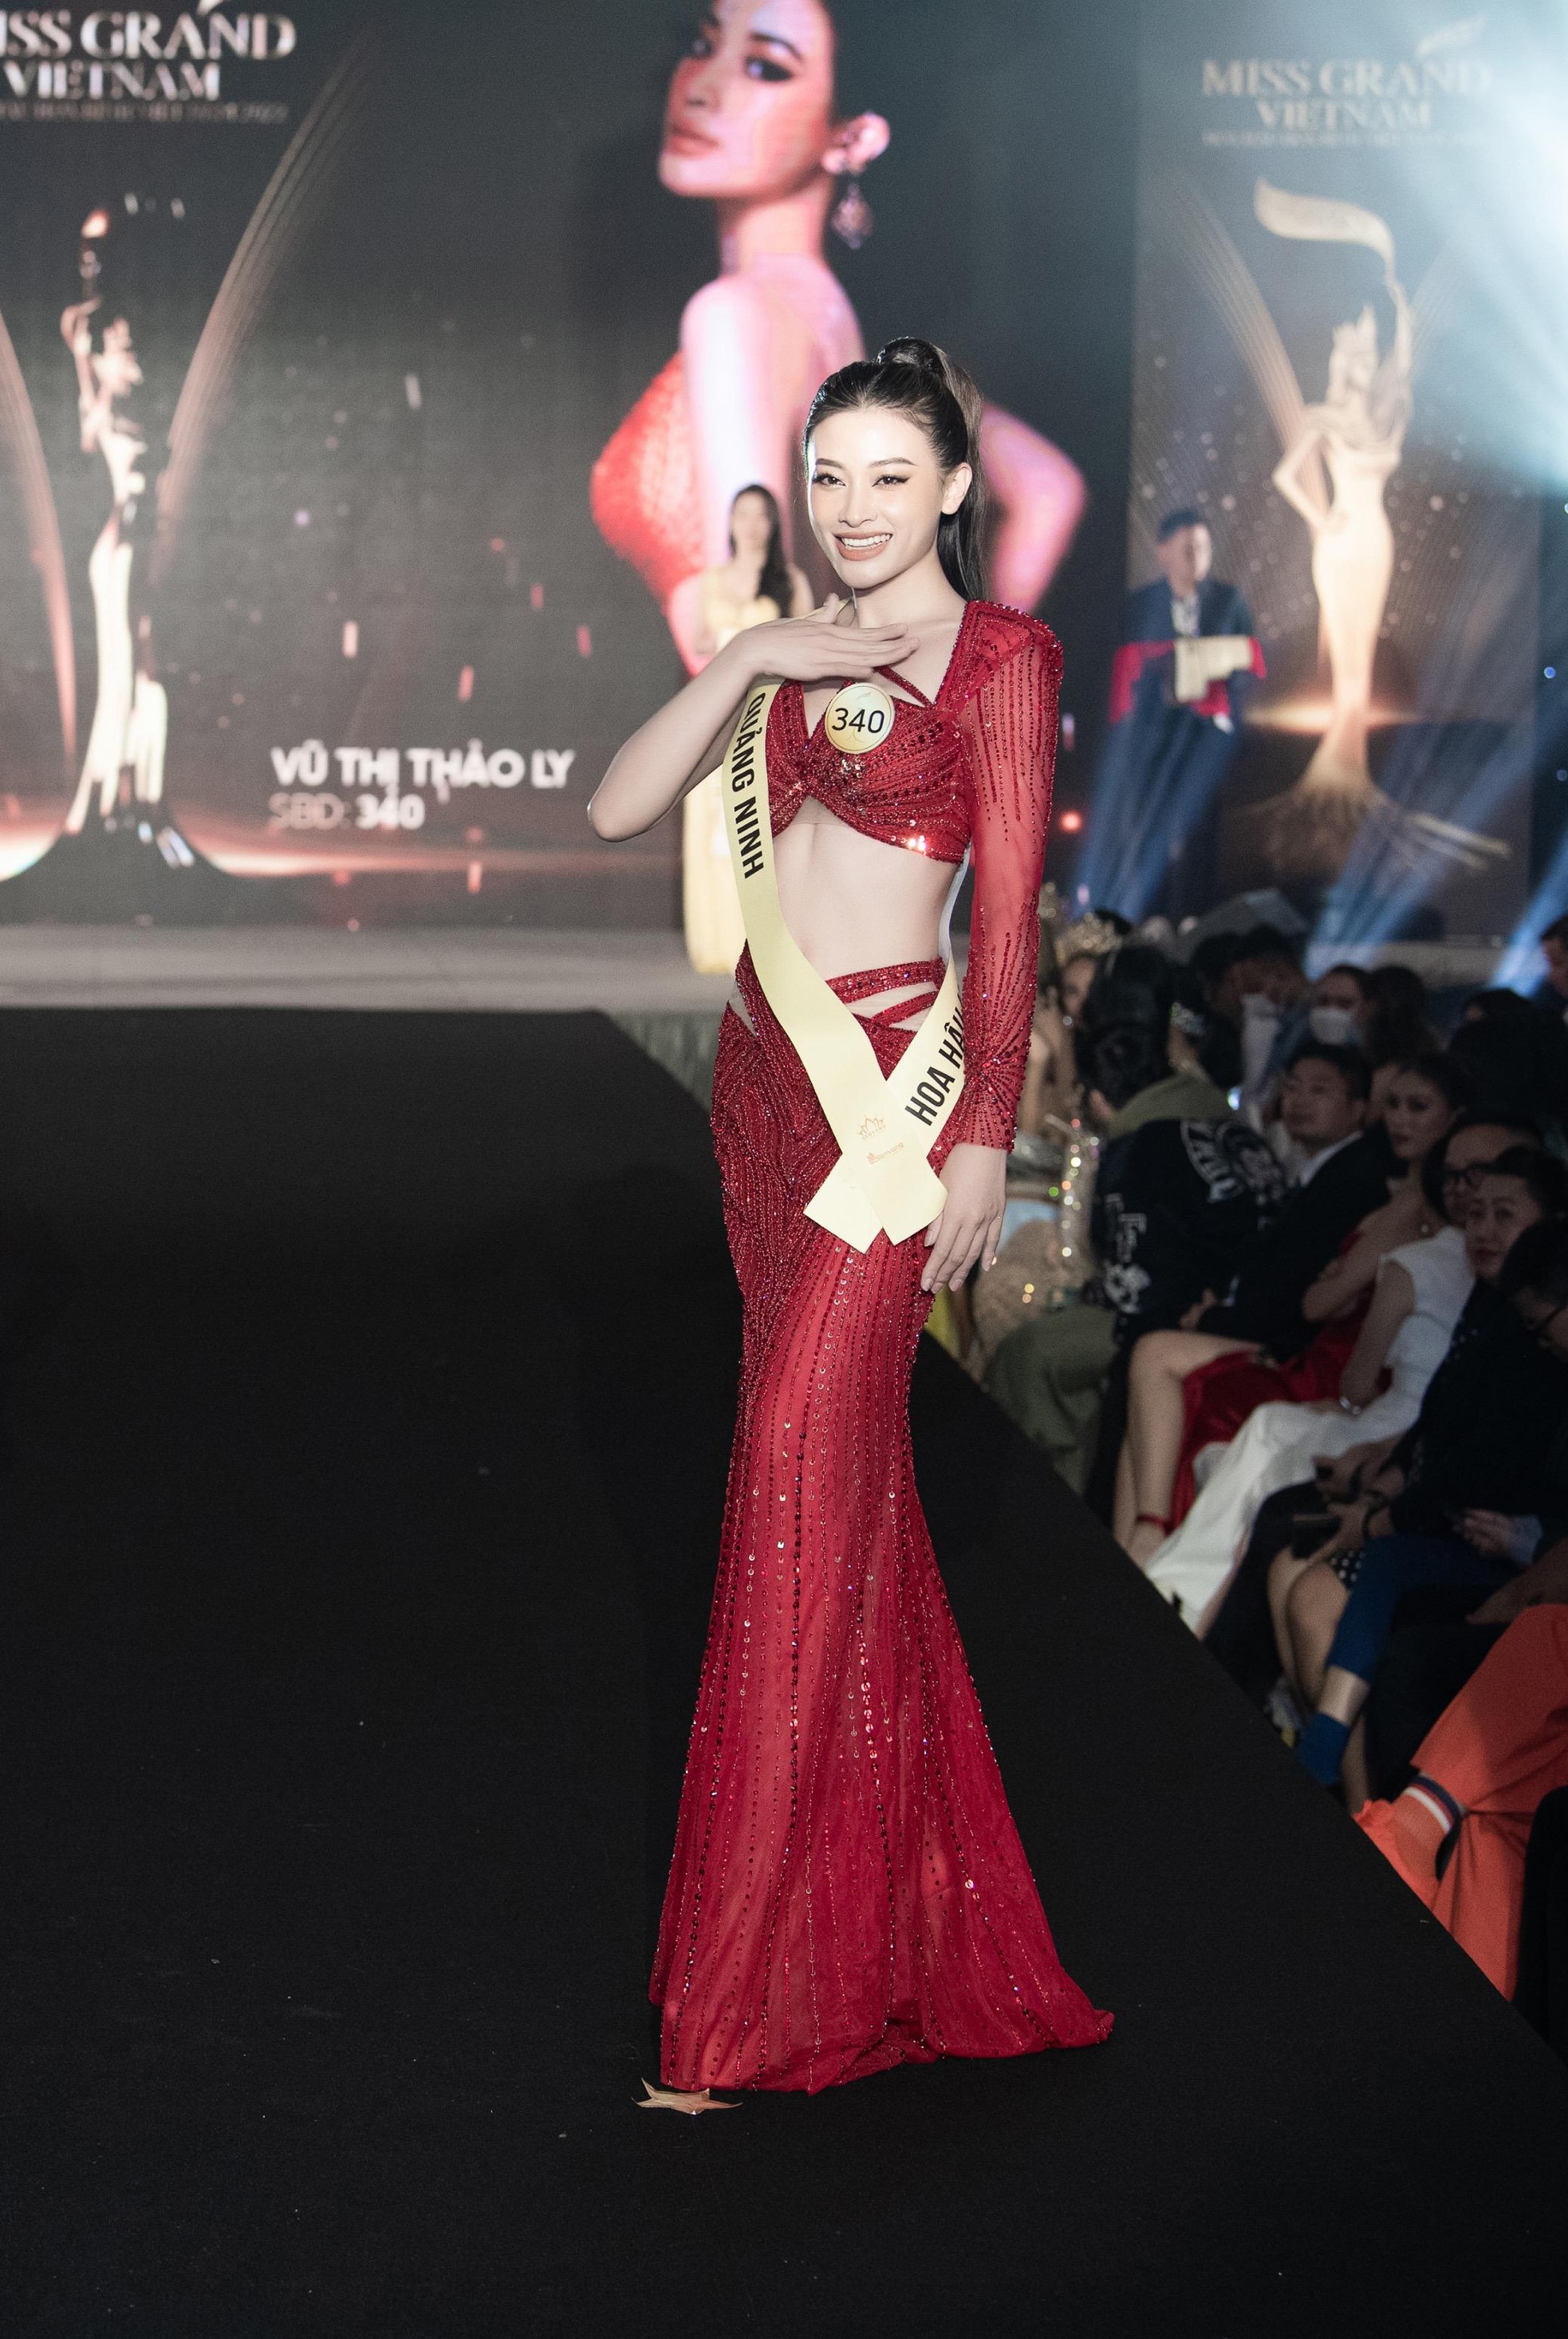 Mai Ngô, Quỳnh Châu tung chiêu catwalk độc đáo tại lễ nhận sash của Miss Grand Vietnam 2022 - Ảnh 5.